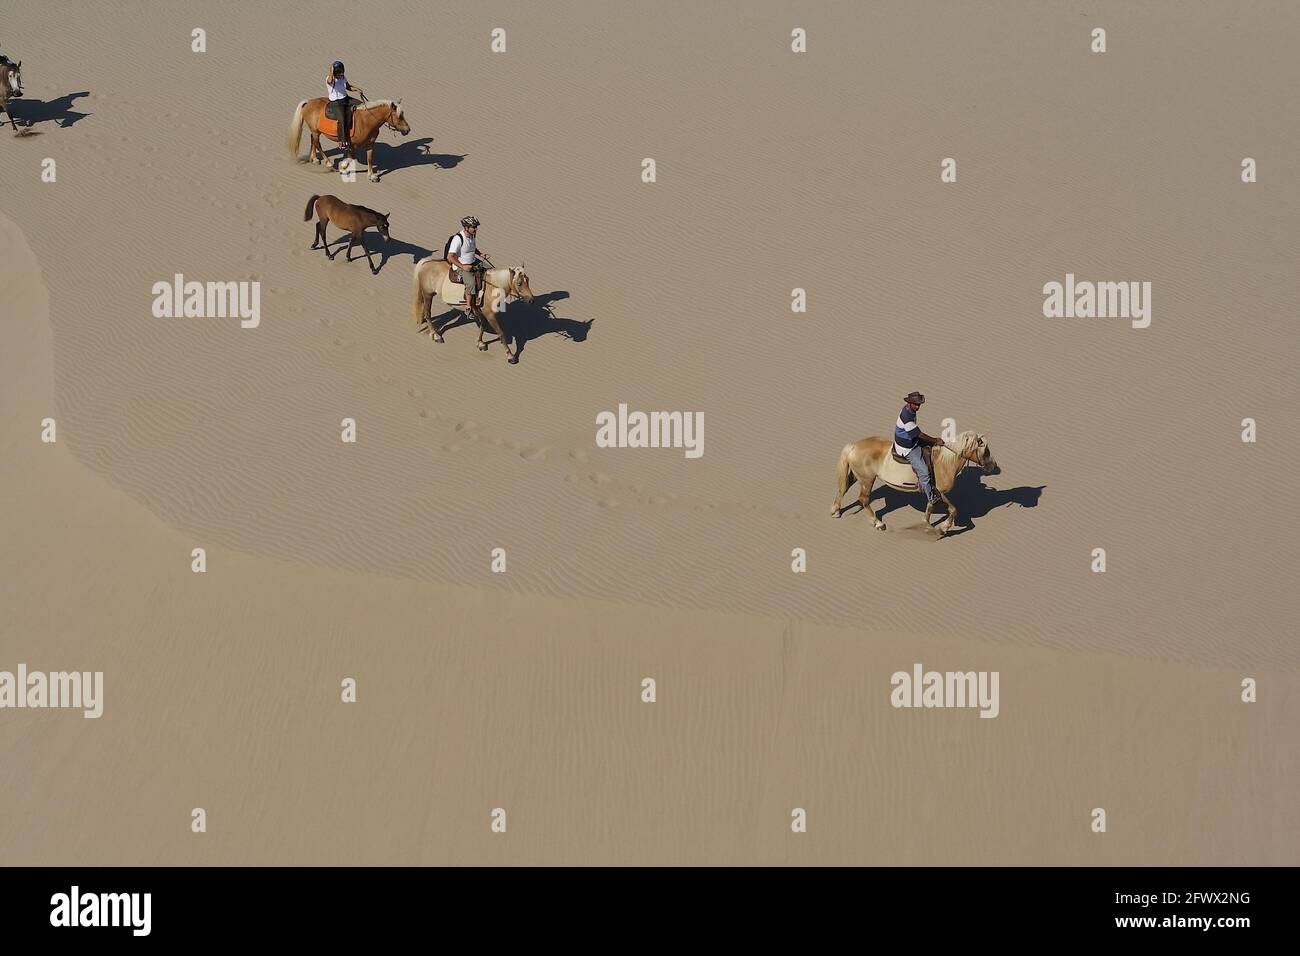 Chevaux (Haflinger) riders sur les dunes de sable à la plage de Patara pendant 8 km d'équitation Banque D'Images